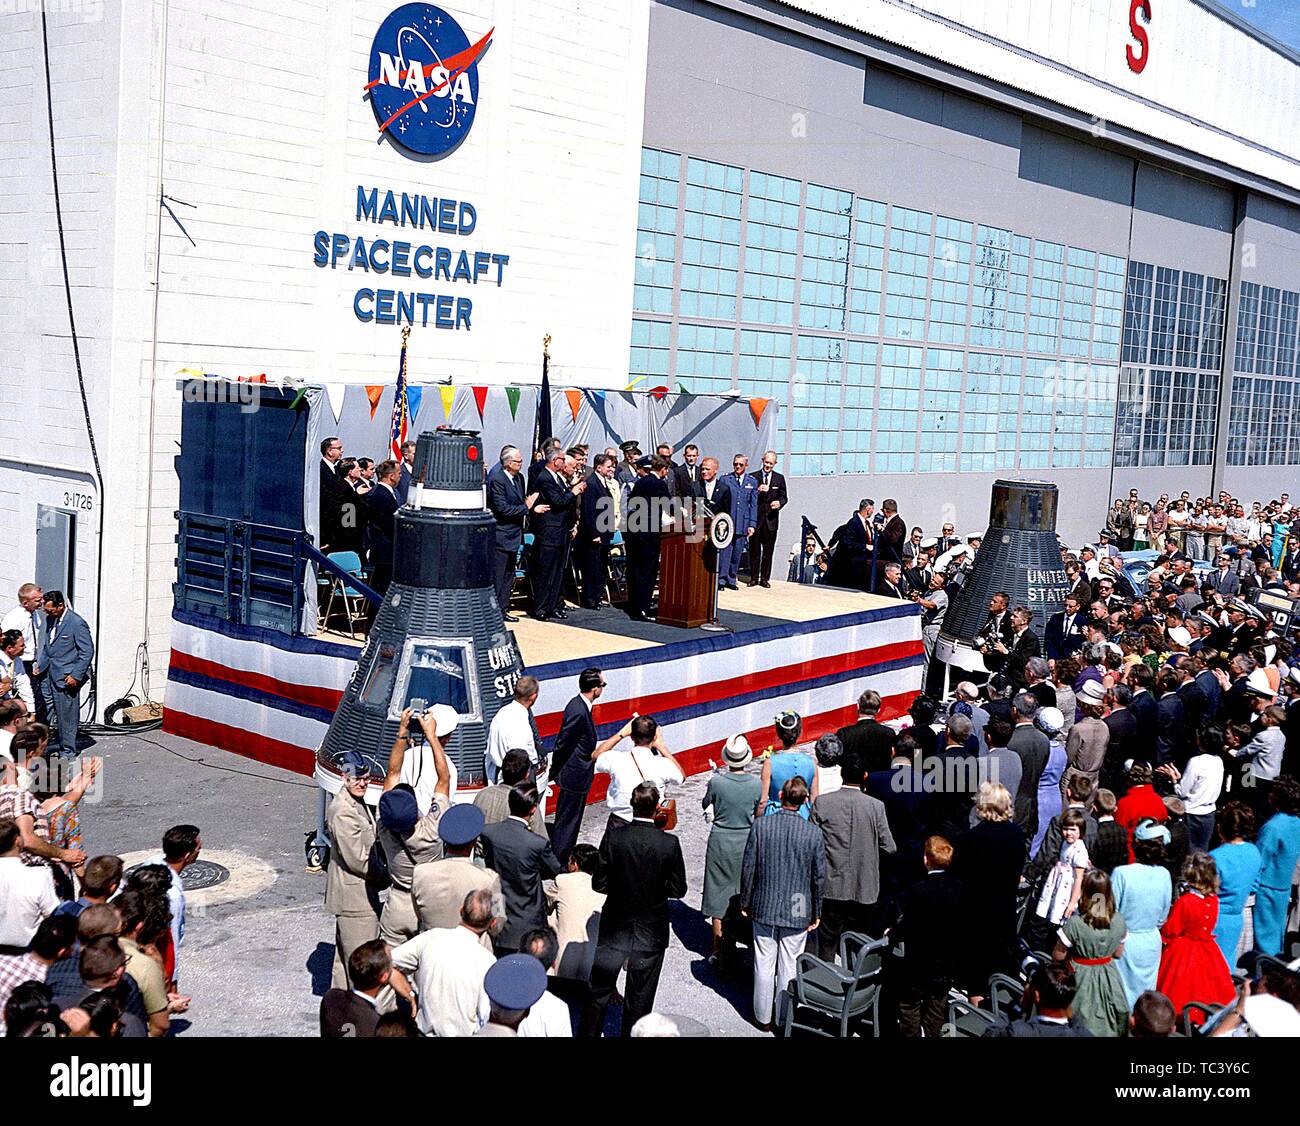 Le président John F Kennedy lors de la cérémonie d'accueil en l'honneur John Glenn, le premier astronaute américain en orbite autour de la Terre, du Manned Spacecraft Center à Houston, Texas, le 23 février 1962. Droit avec la permission de la National Aeronautics and Space Administration (NASA). () Banque D'Images